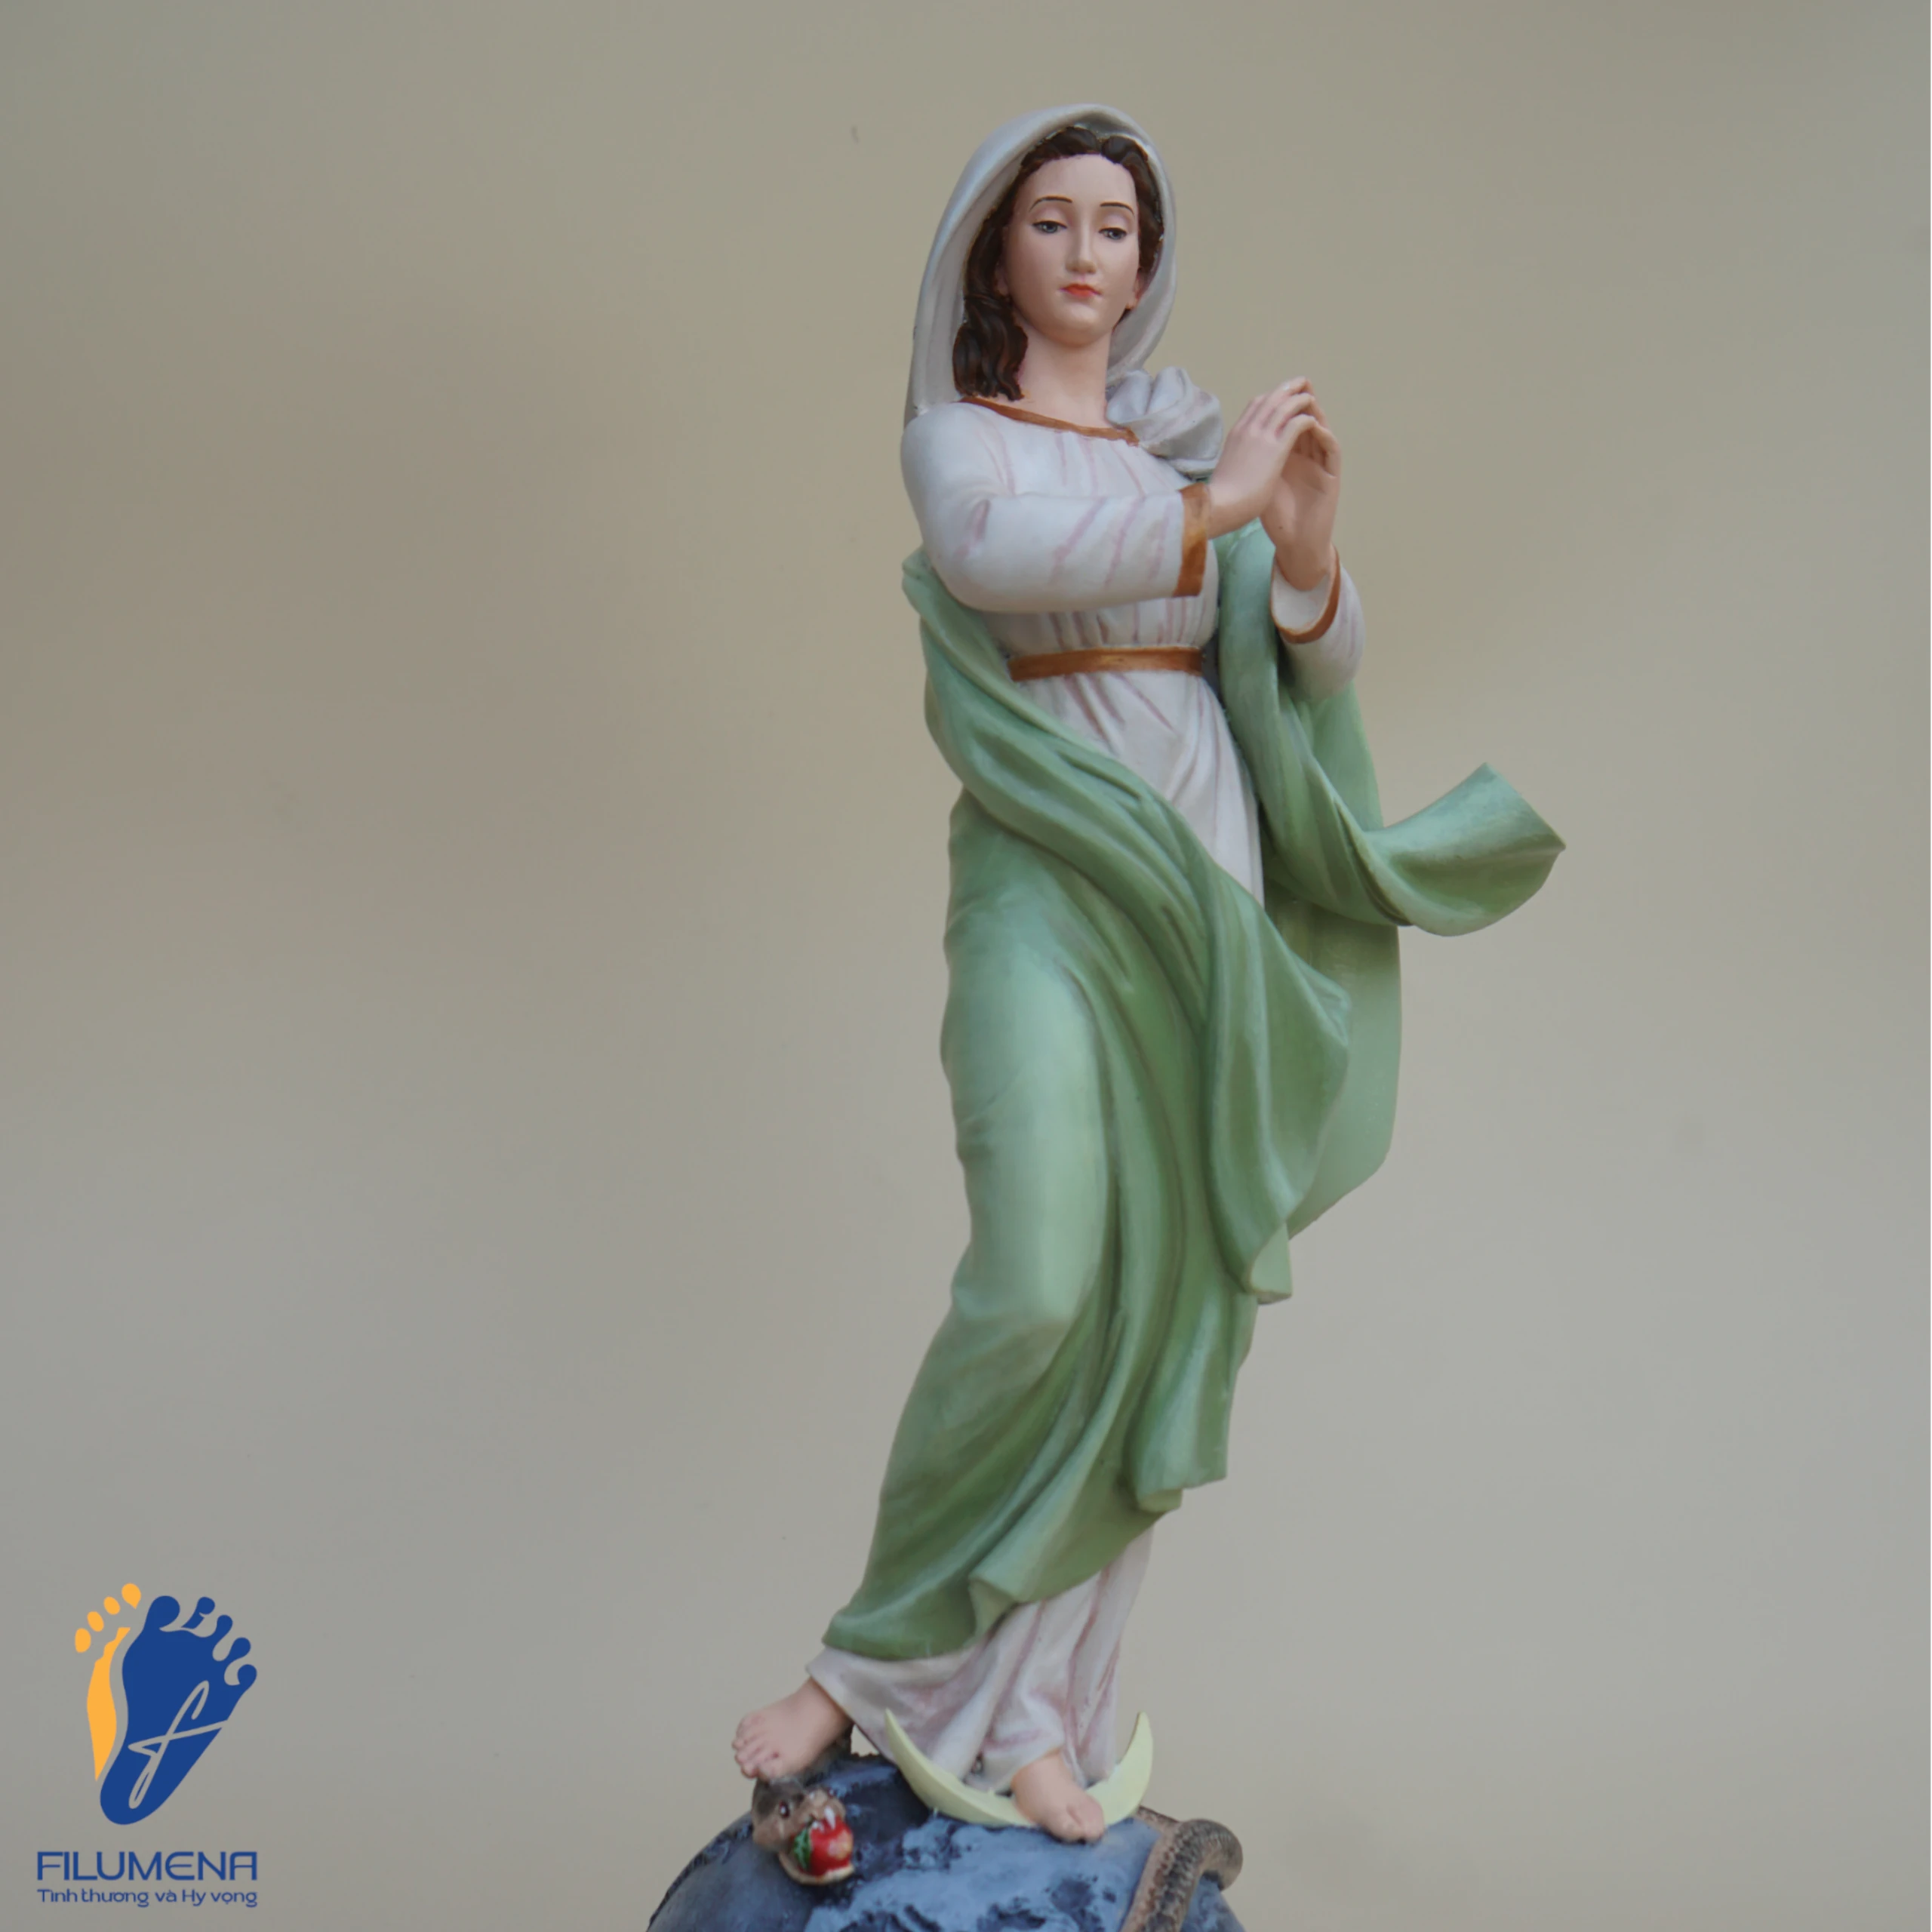 Tượng Đức Mẹ Vô Nhiễm Nguyên Tội màu xanh cốm (mẫu tượng do Filumena sáng tác)